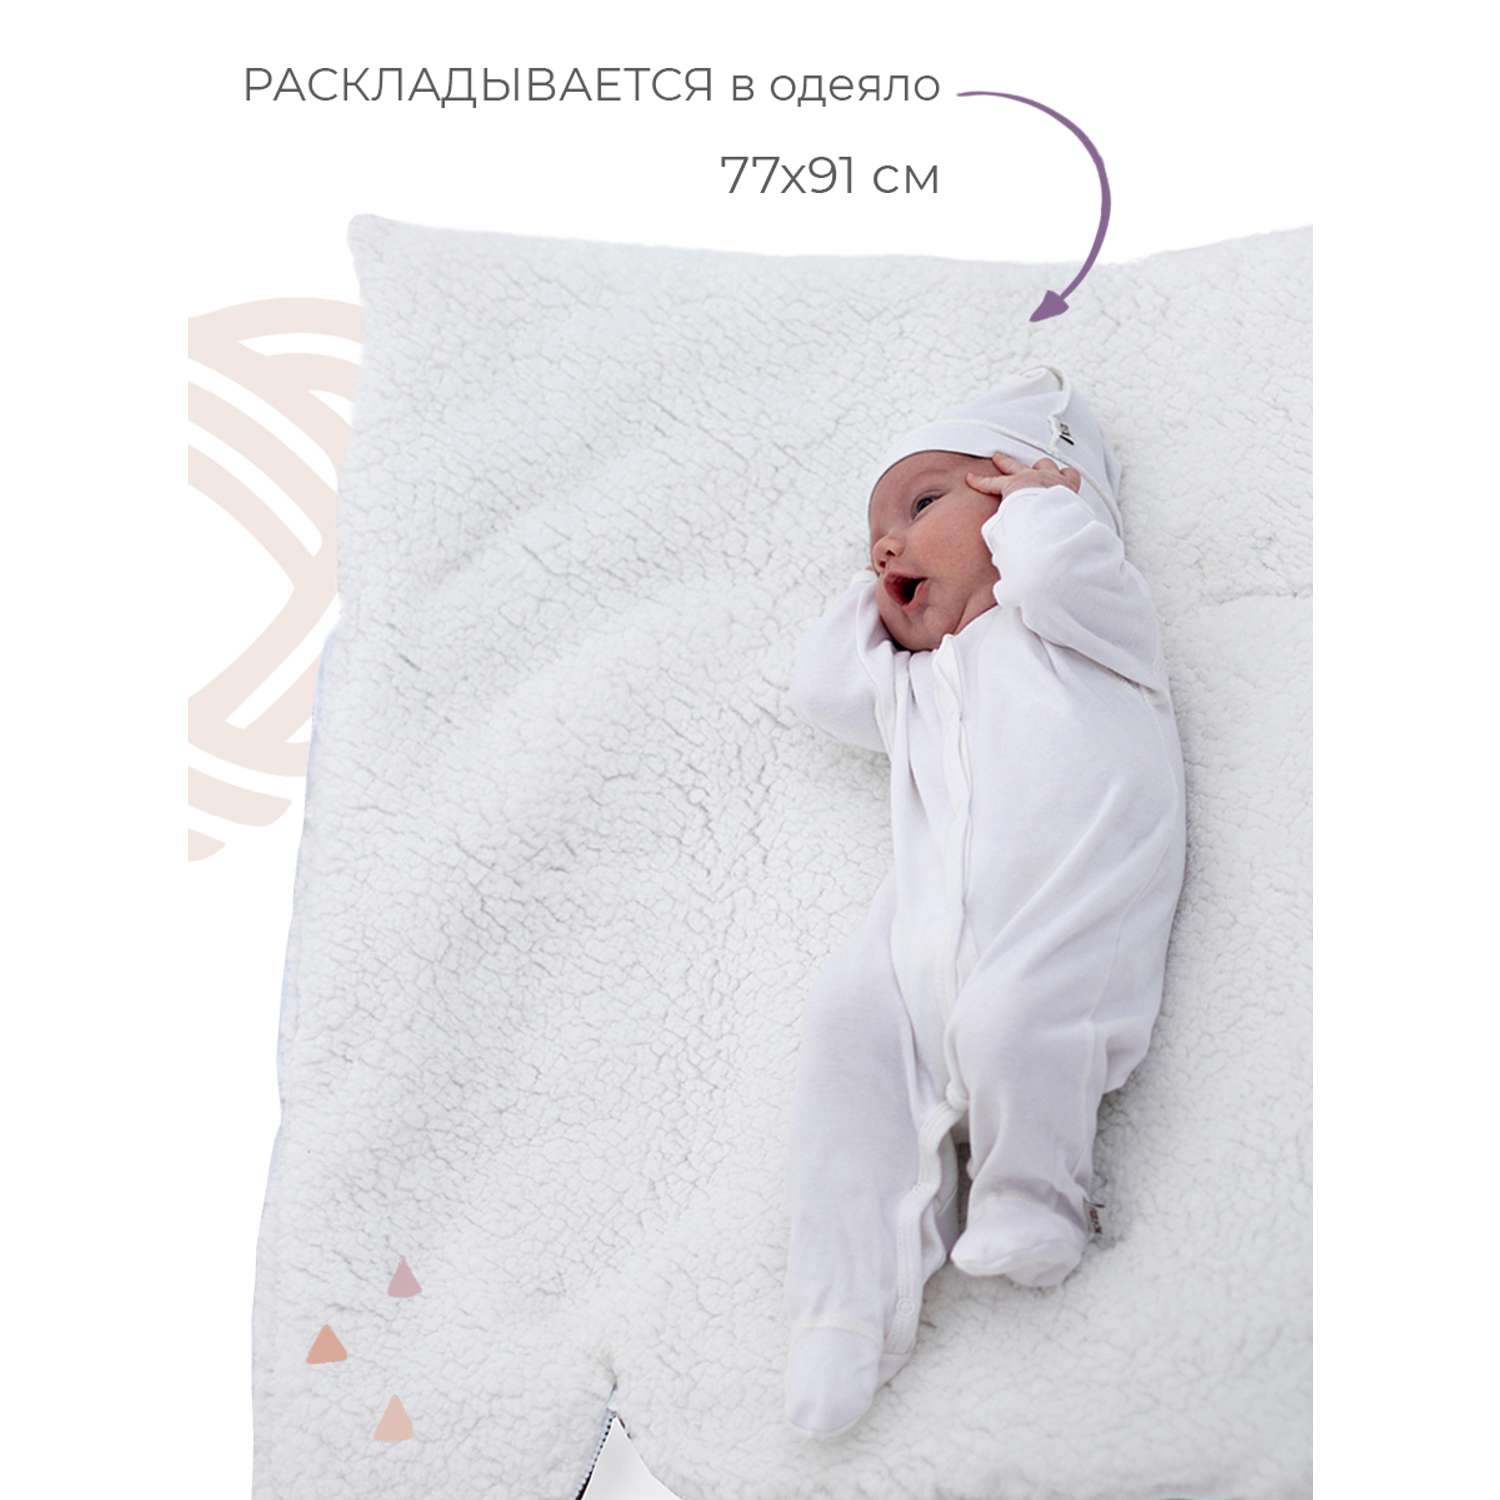 Конверт в коляску inlovery для новорожденного «Нортес» капучино - фото 5